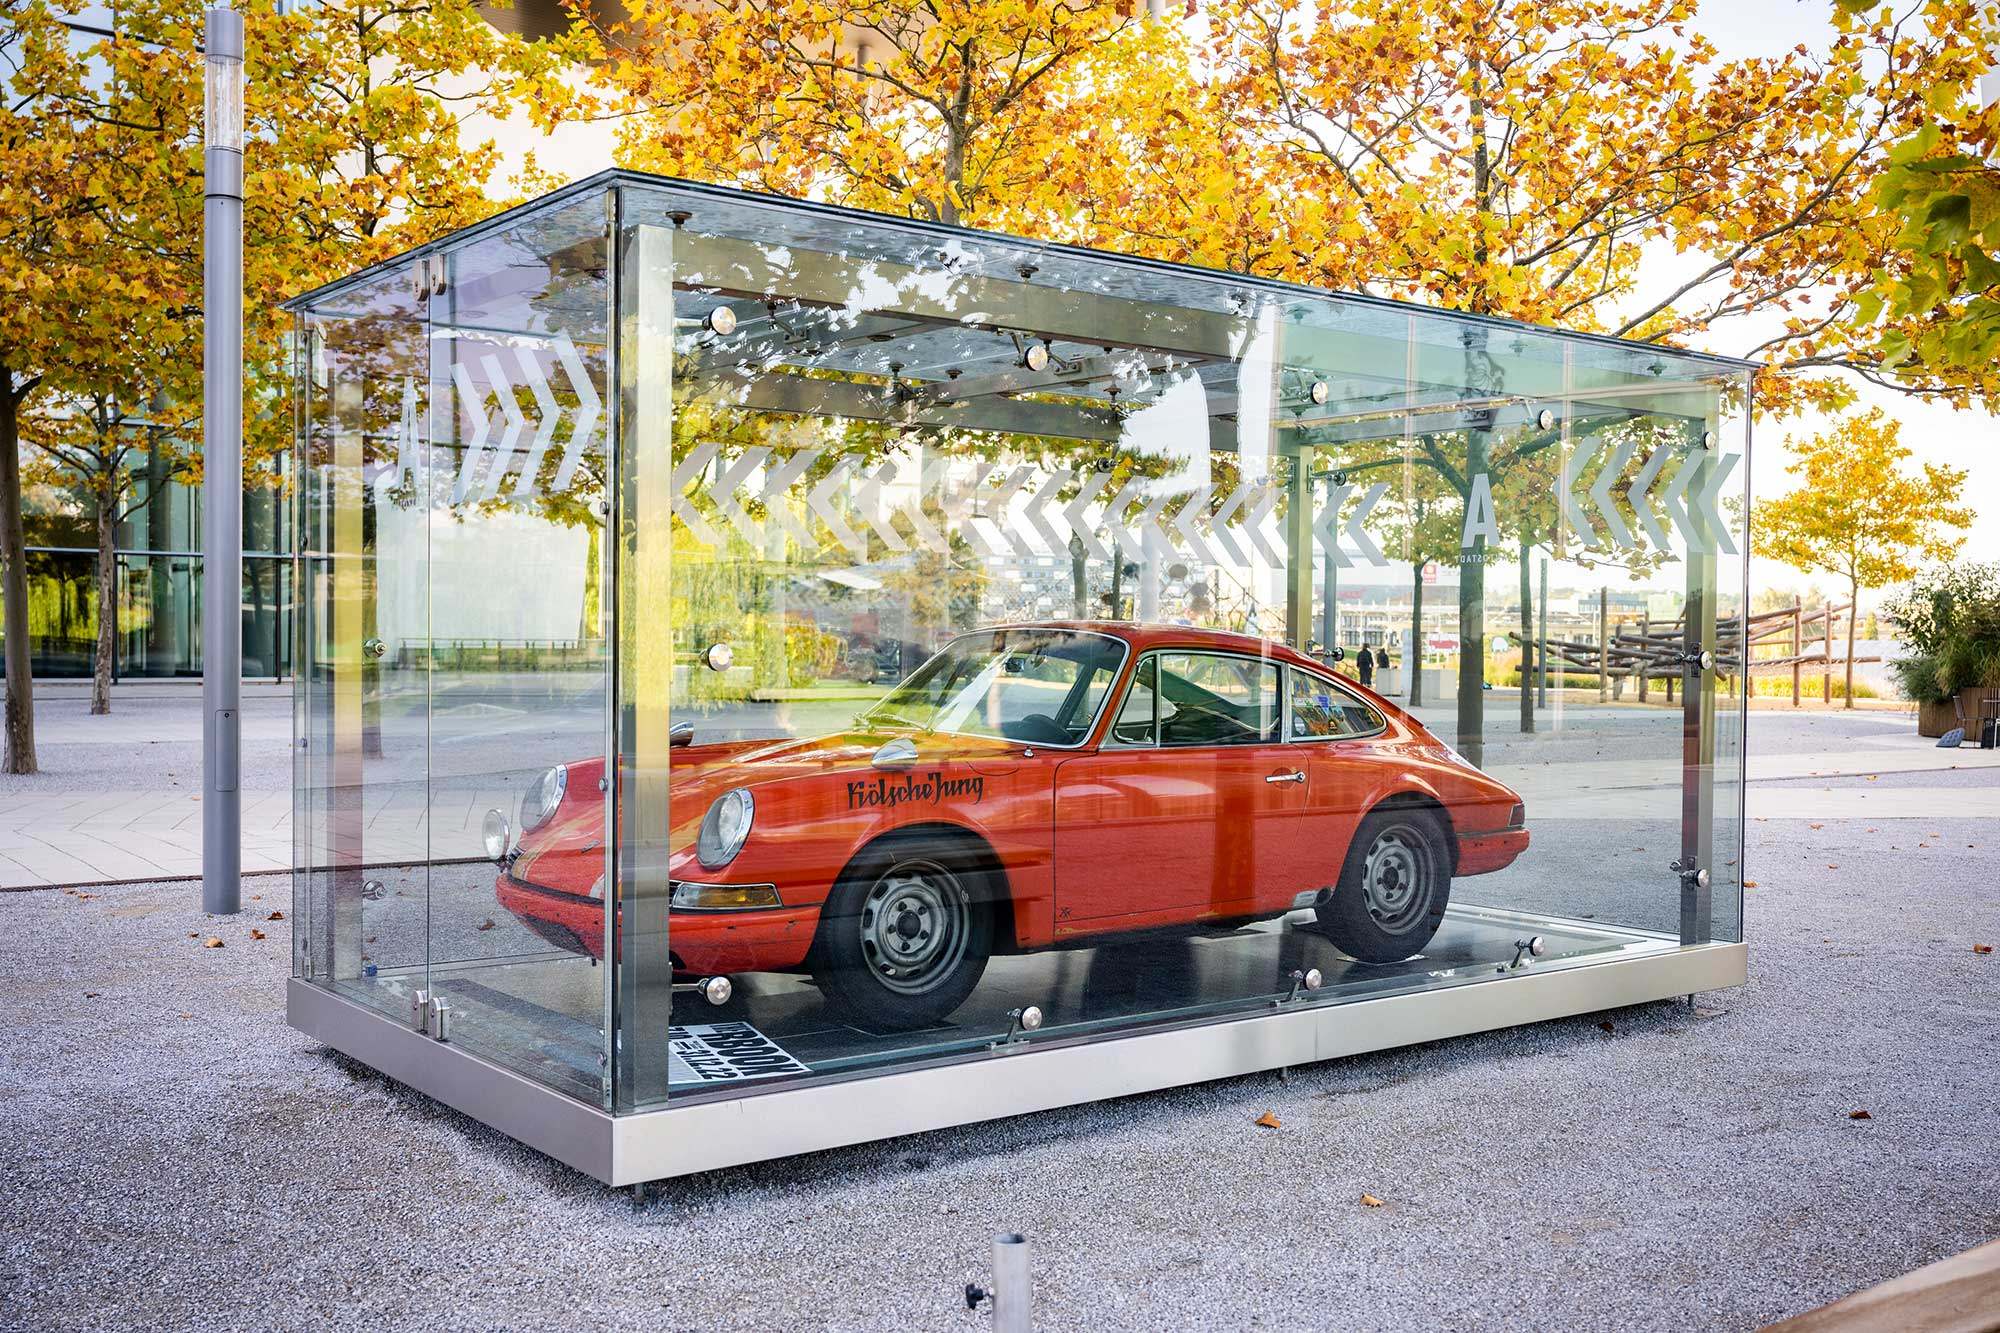 Foto eines roten Porsche in einem Glaskasten auf dem Autostadtgelände umringt von Bäumen. Auf dem linken Kotflügel steht "Kölscher Jung".